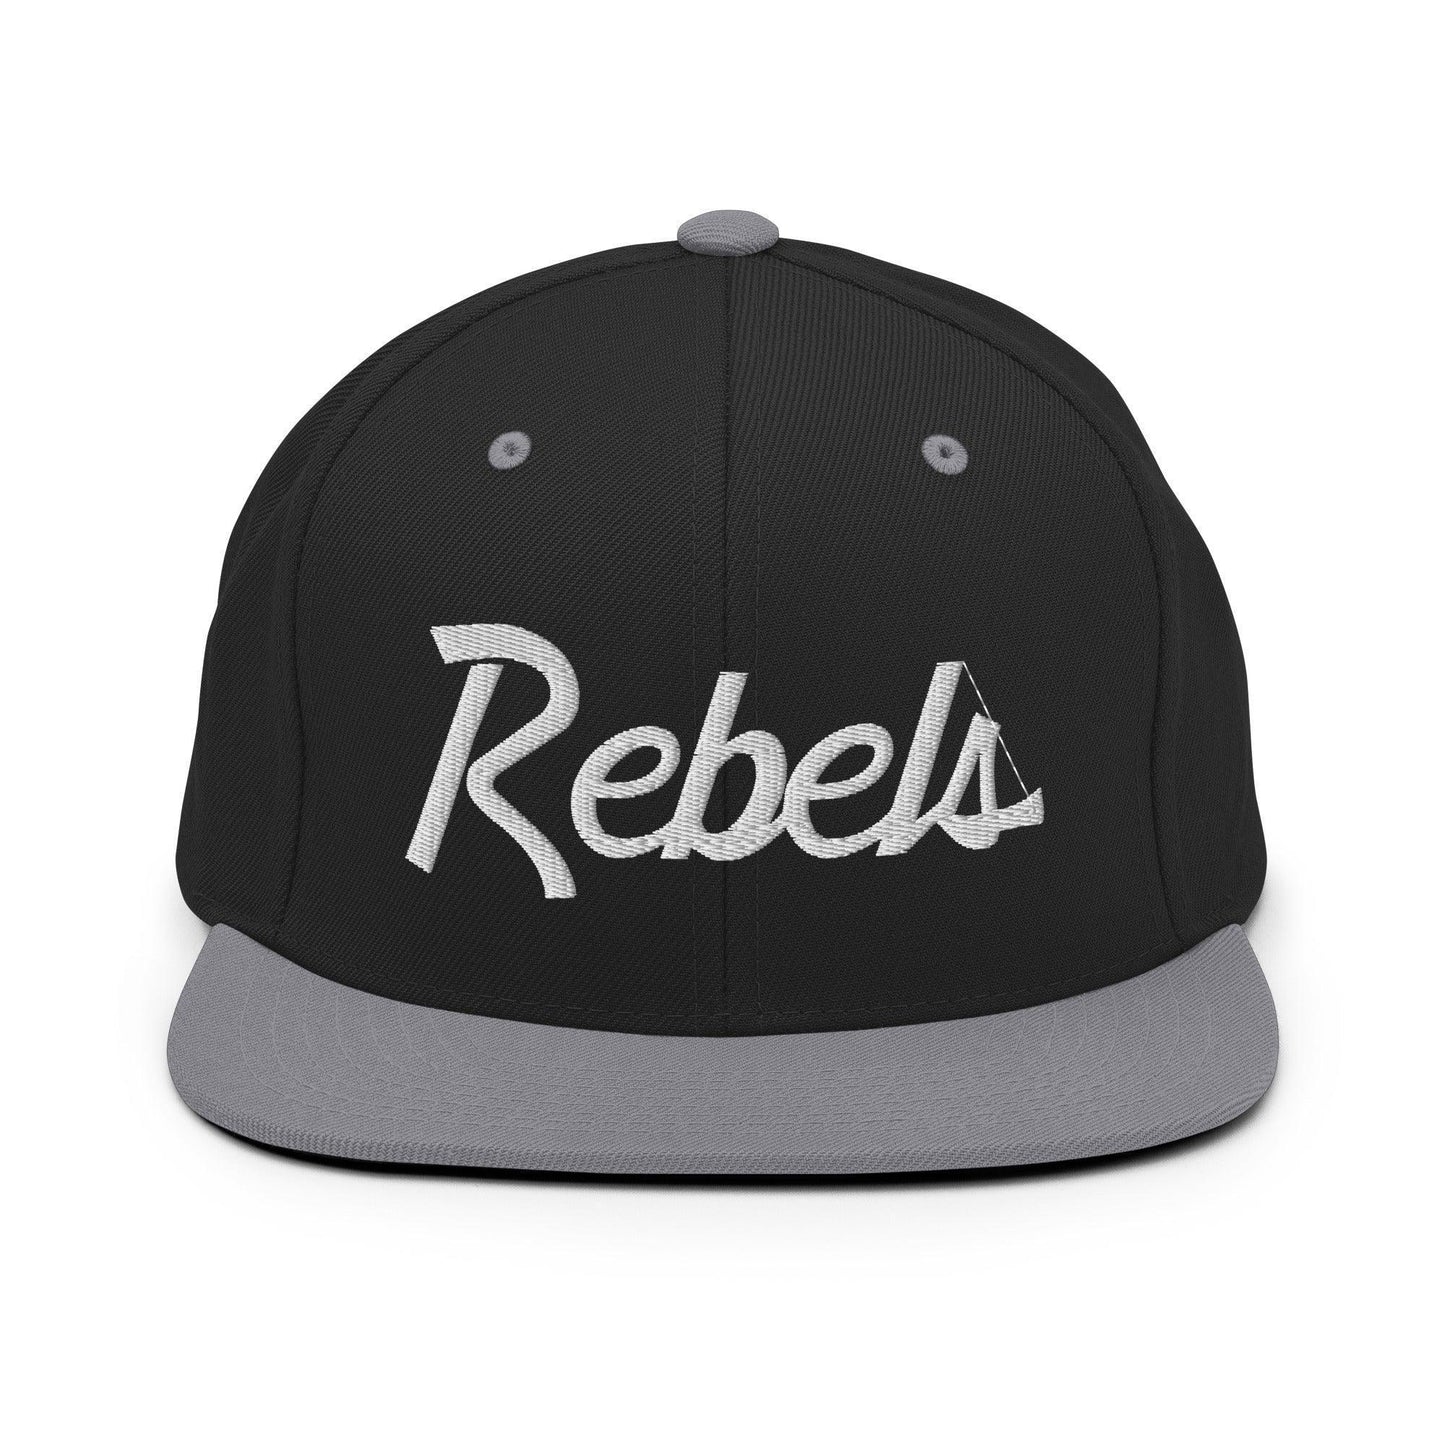 Rebels School Mascot Script Snapback Hat Black Silver